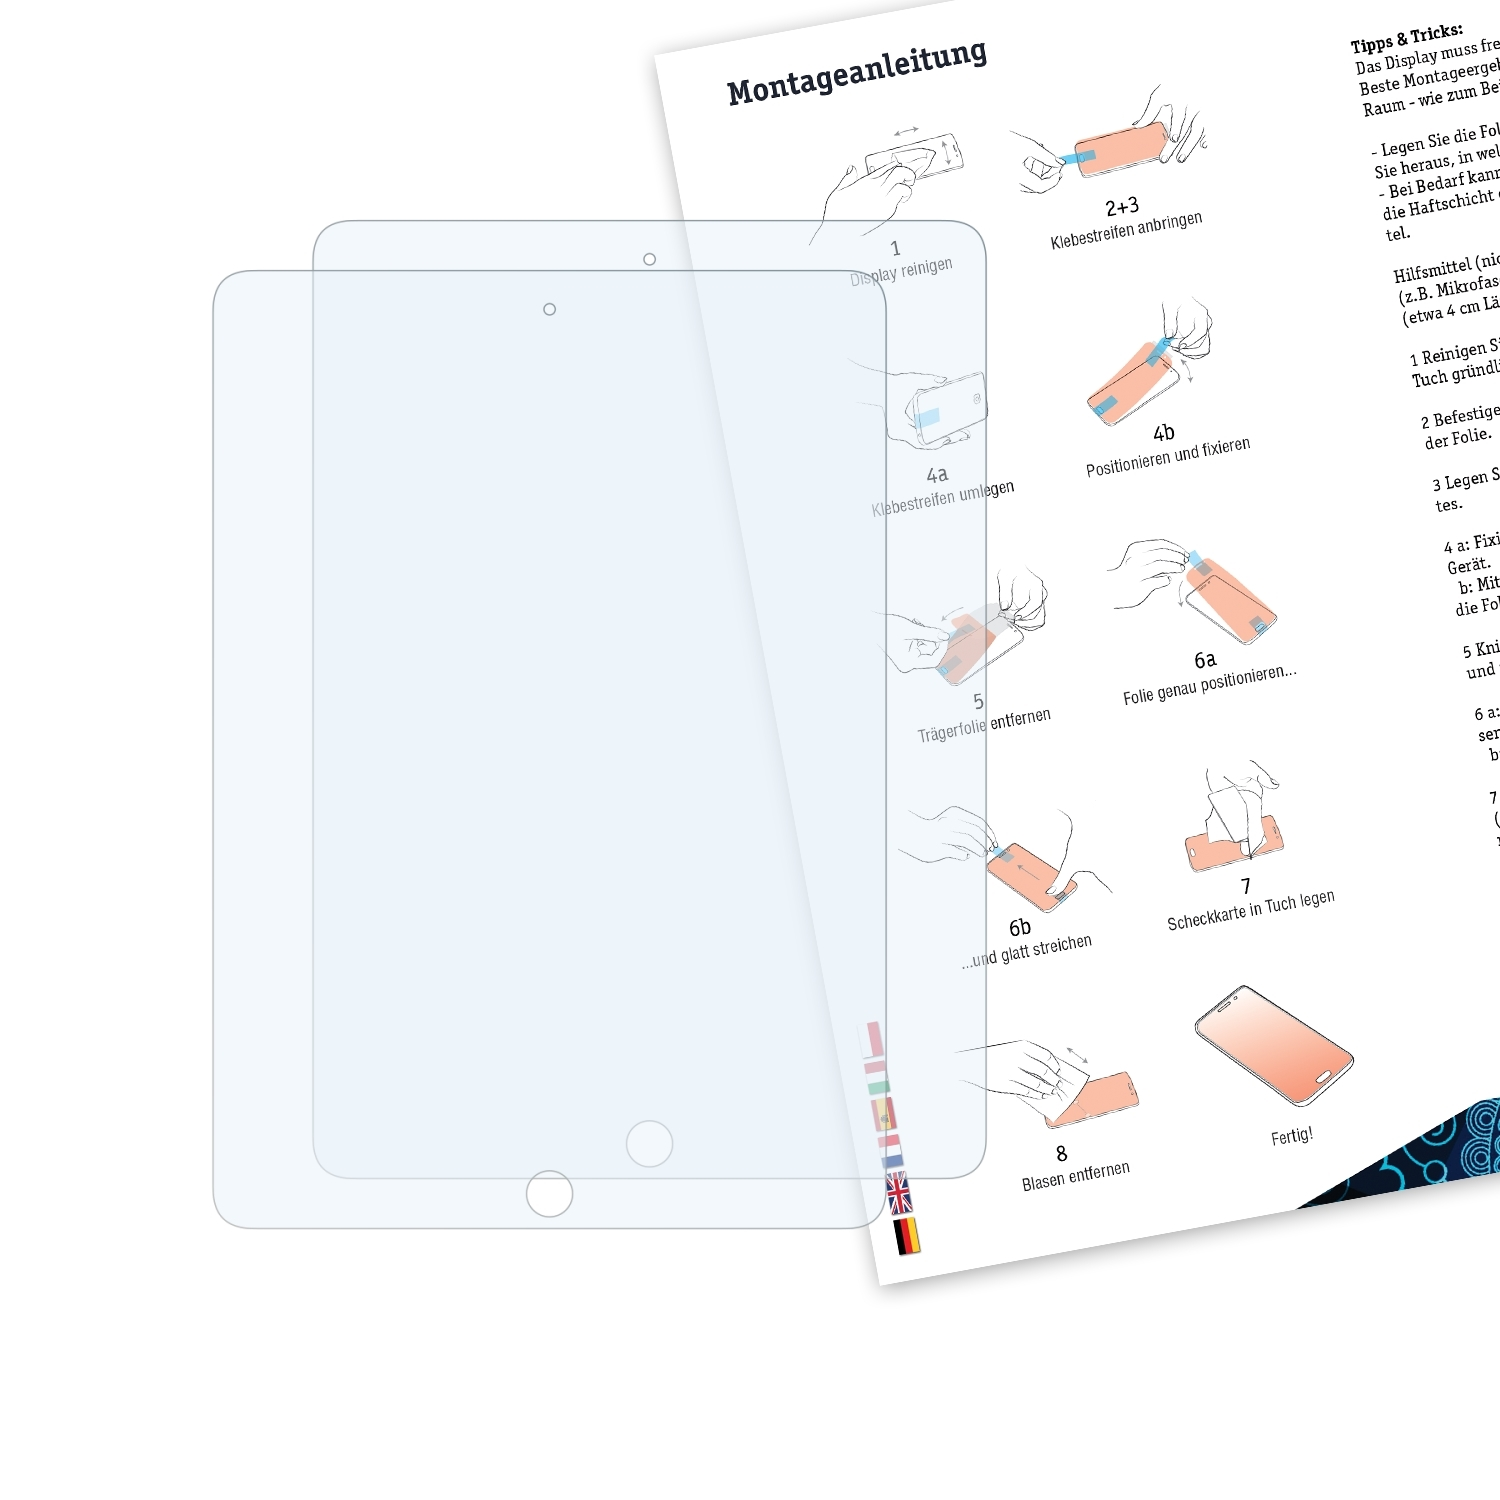 (2013)) iPad 2x BRUNI Apple Schutzfolie(für Basics-Clear Air